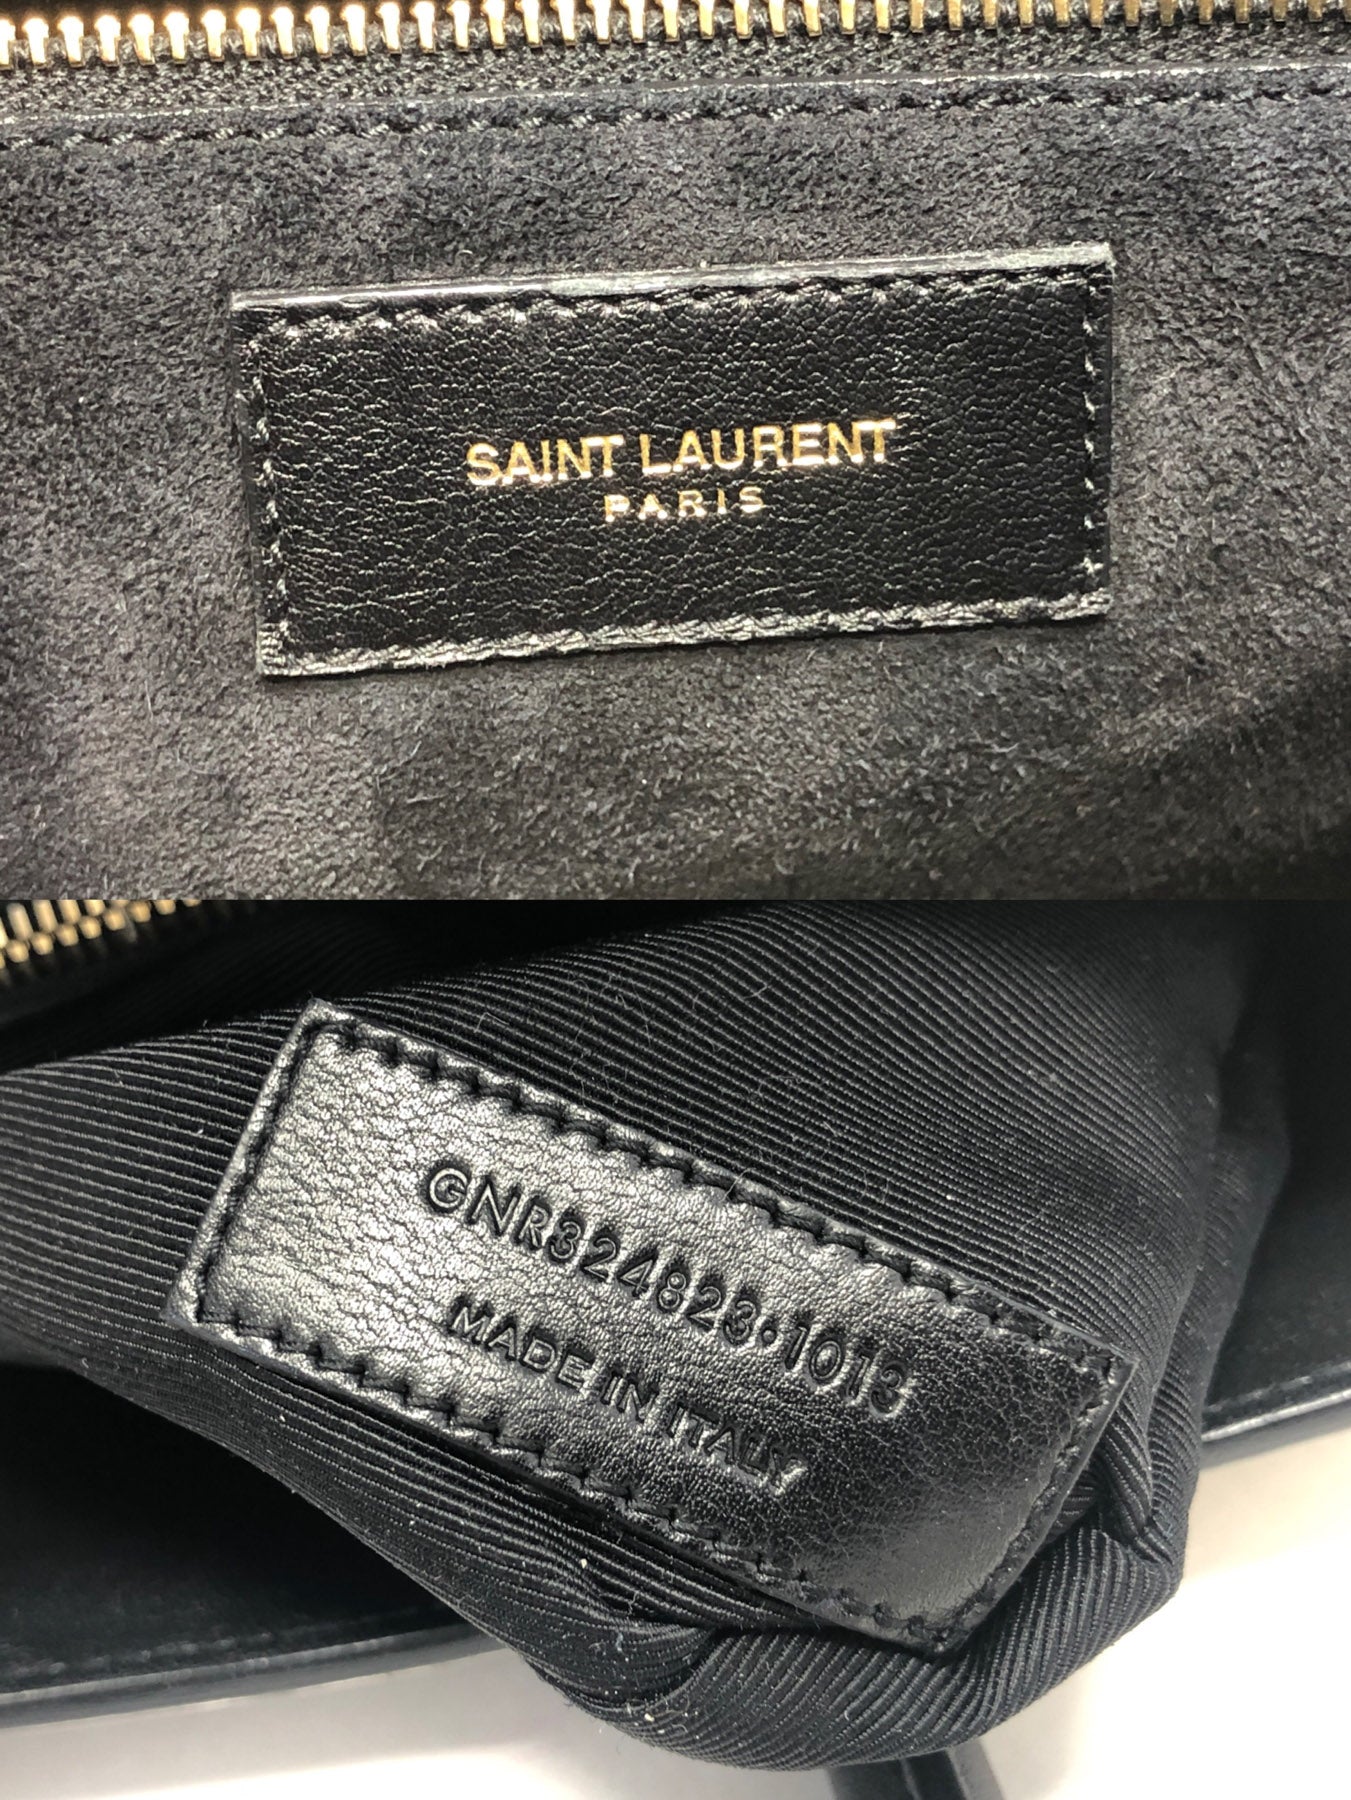 Saint Laurent Paris Classic Sac De Jour Bag